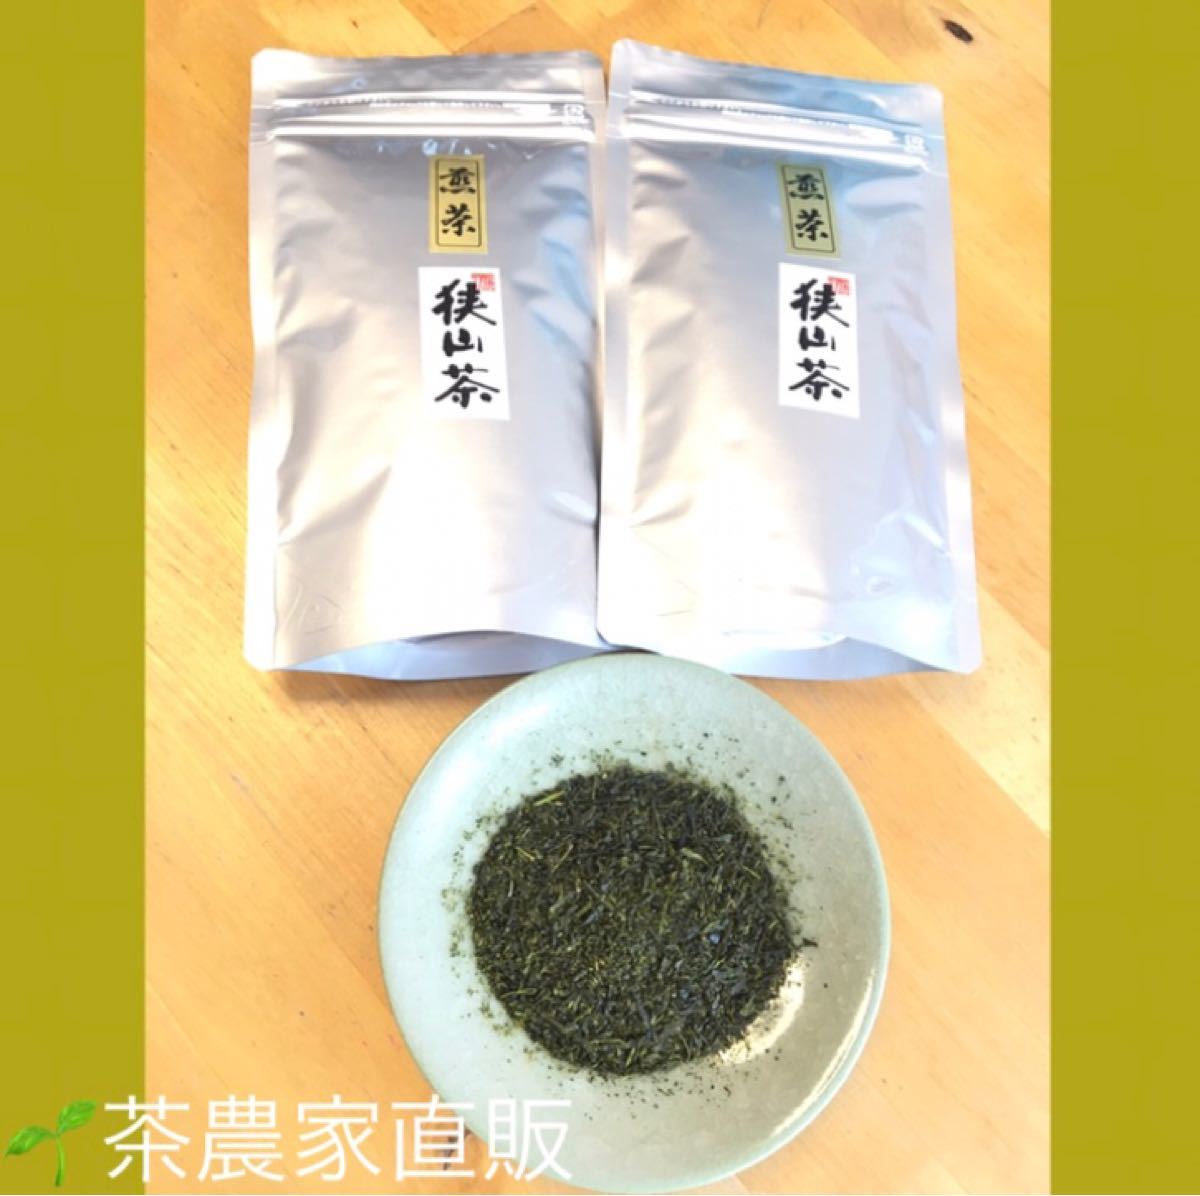 【狭山茶】茶畑直販☆一番茶100%☆なつかし煎茶(令2年度産)2本セット(お茶)